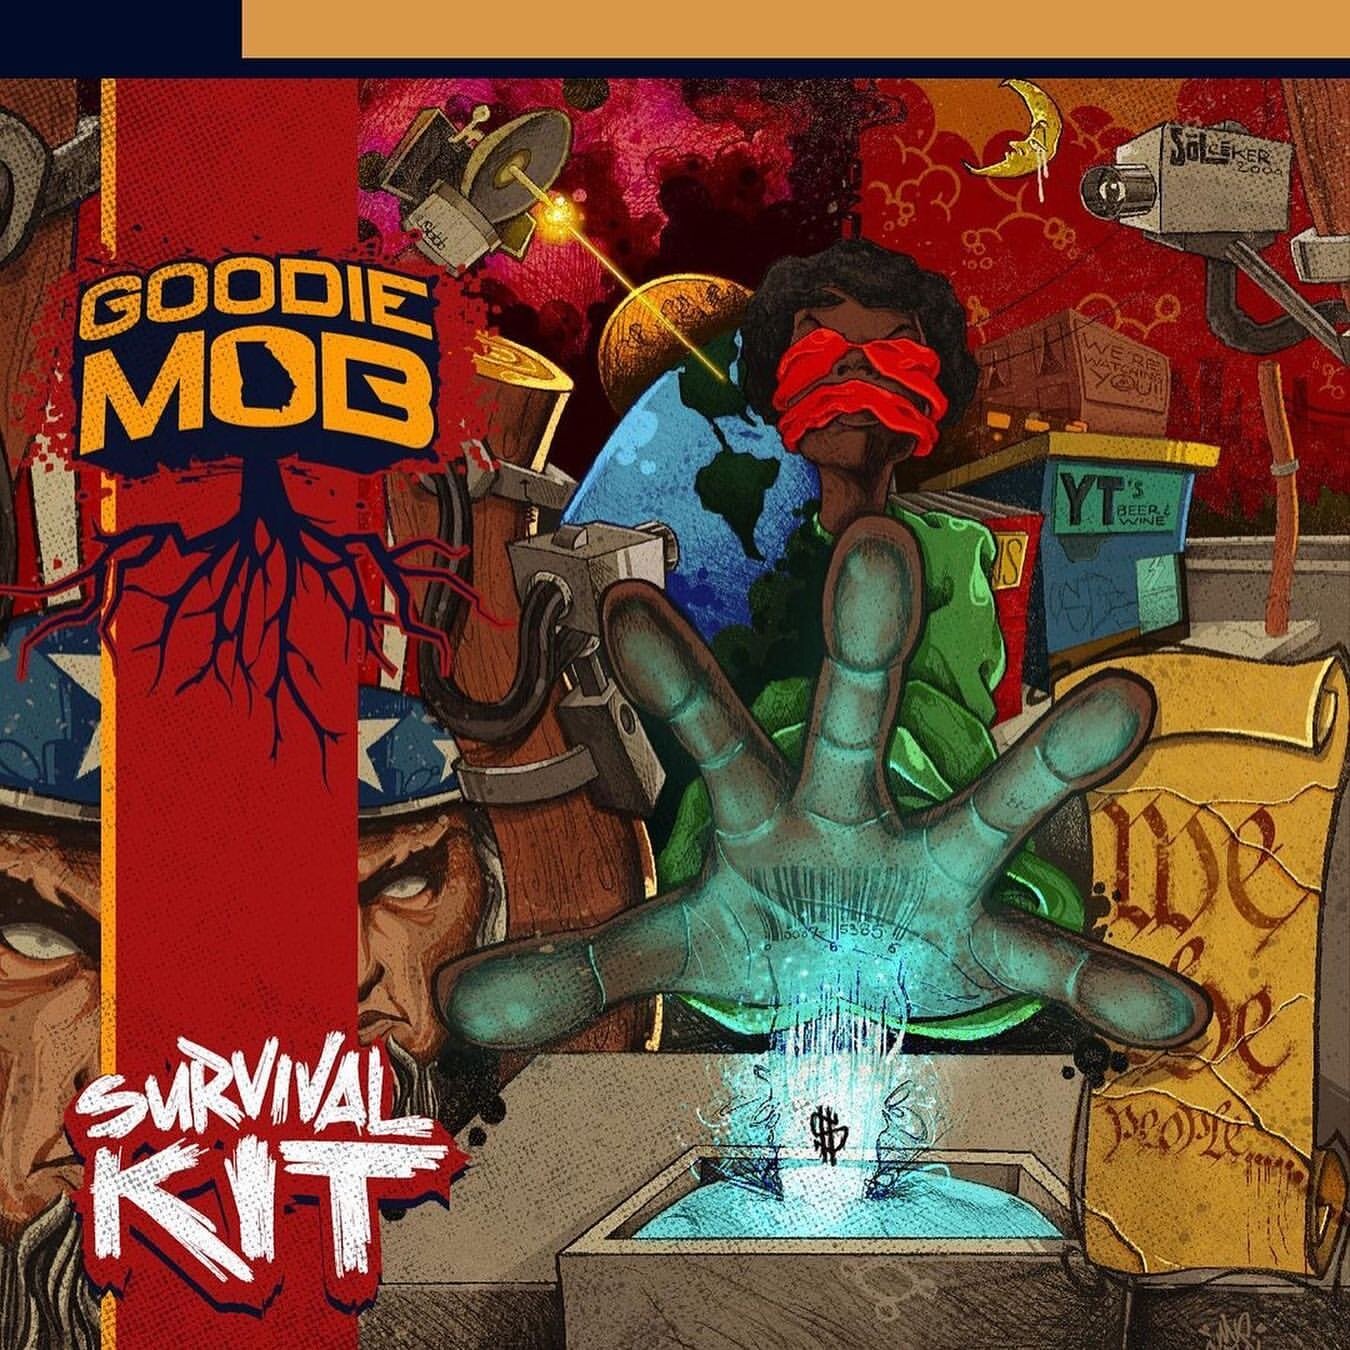 Goodie Mob "Survival Kit" 